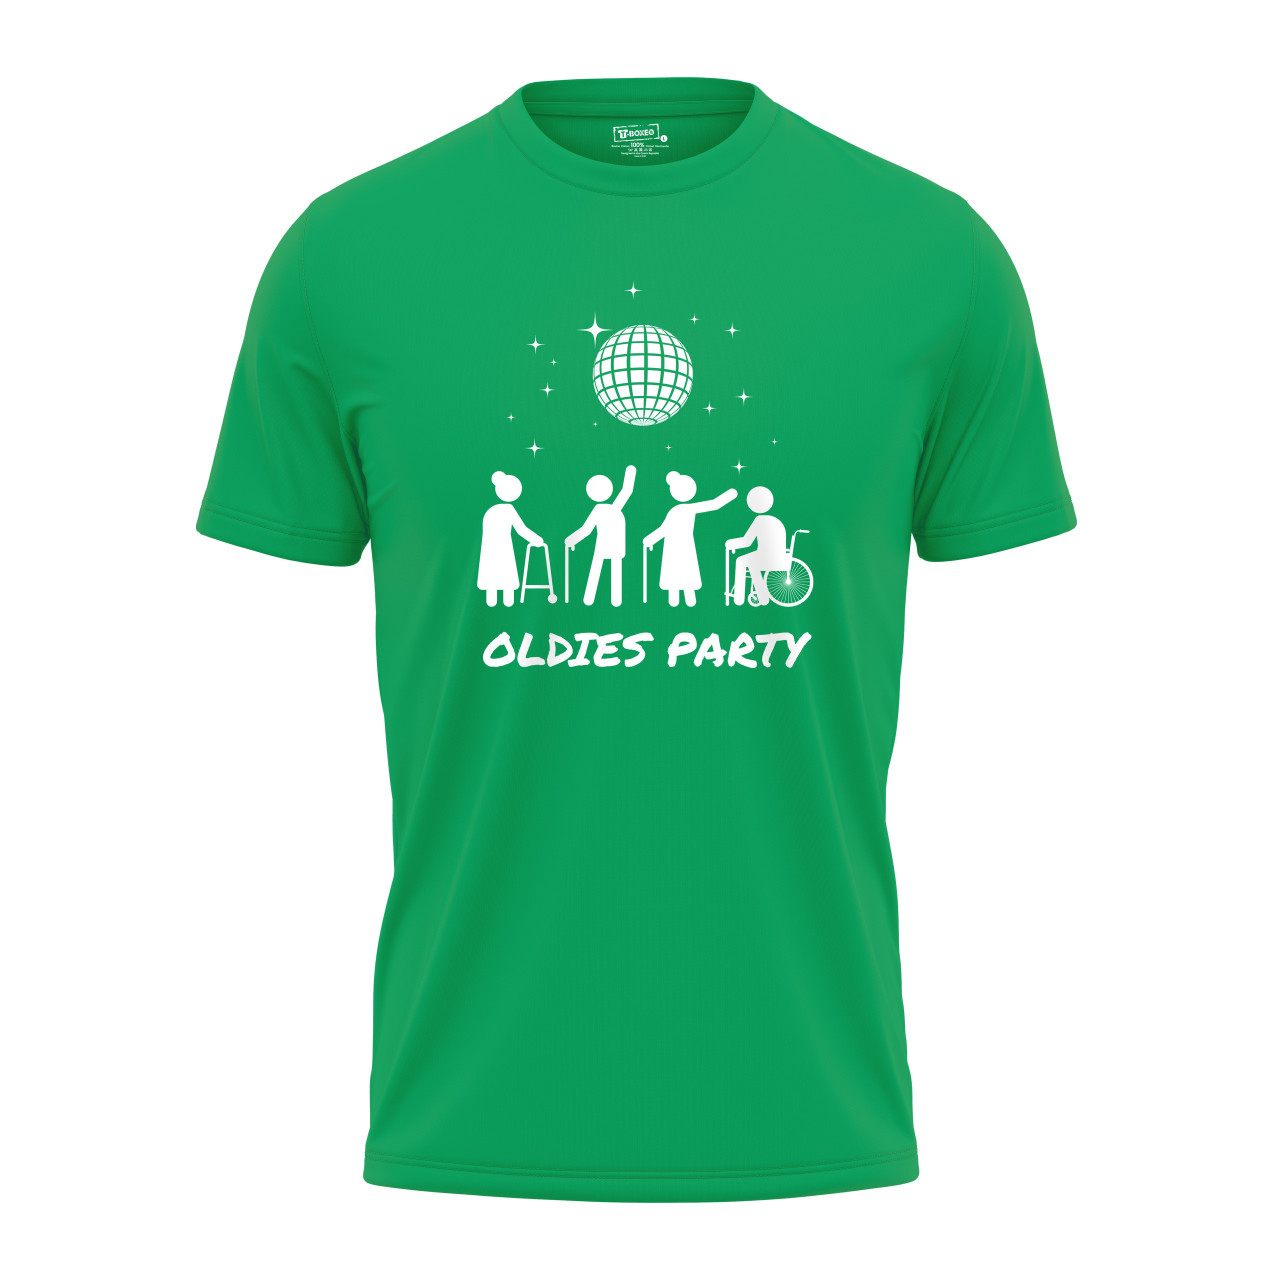 Pánské tričko s potiskem “Oldies party”